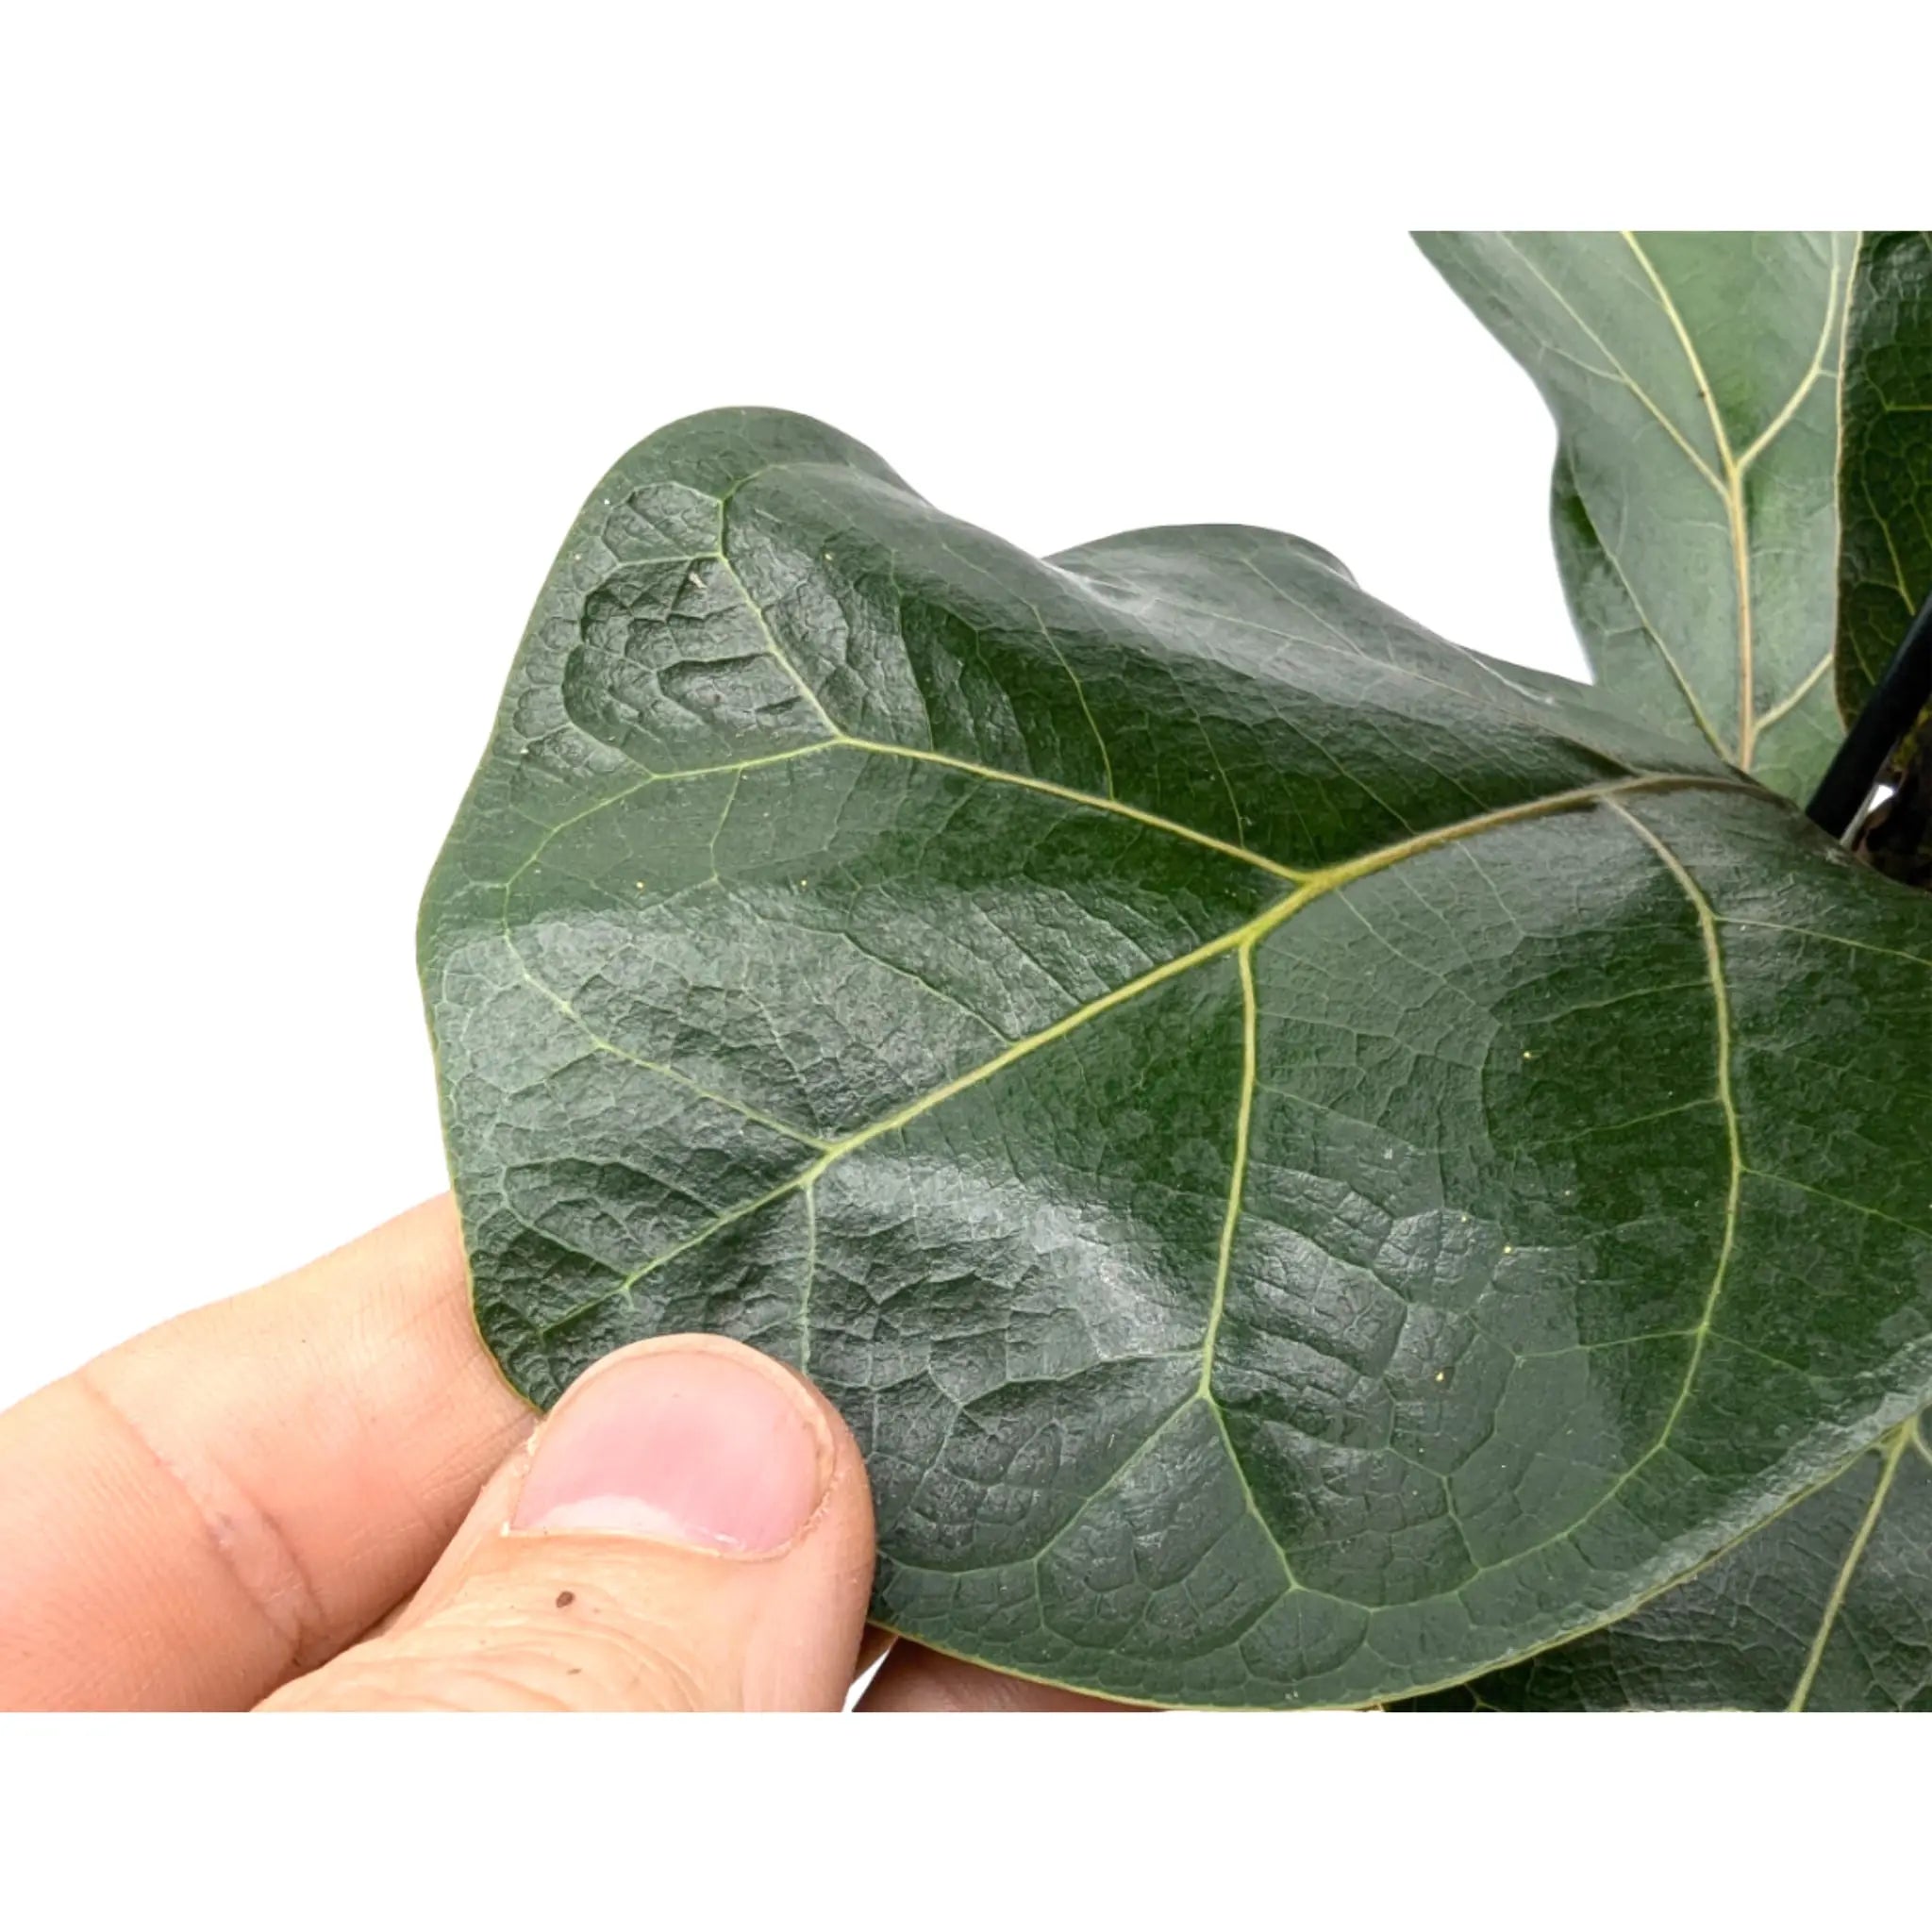 Ficus lyrata Bambino - Dwarf Fiddle Leaf Fig Leaf Culture